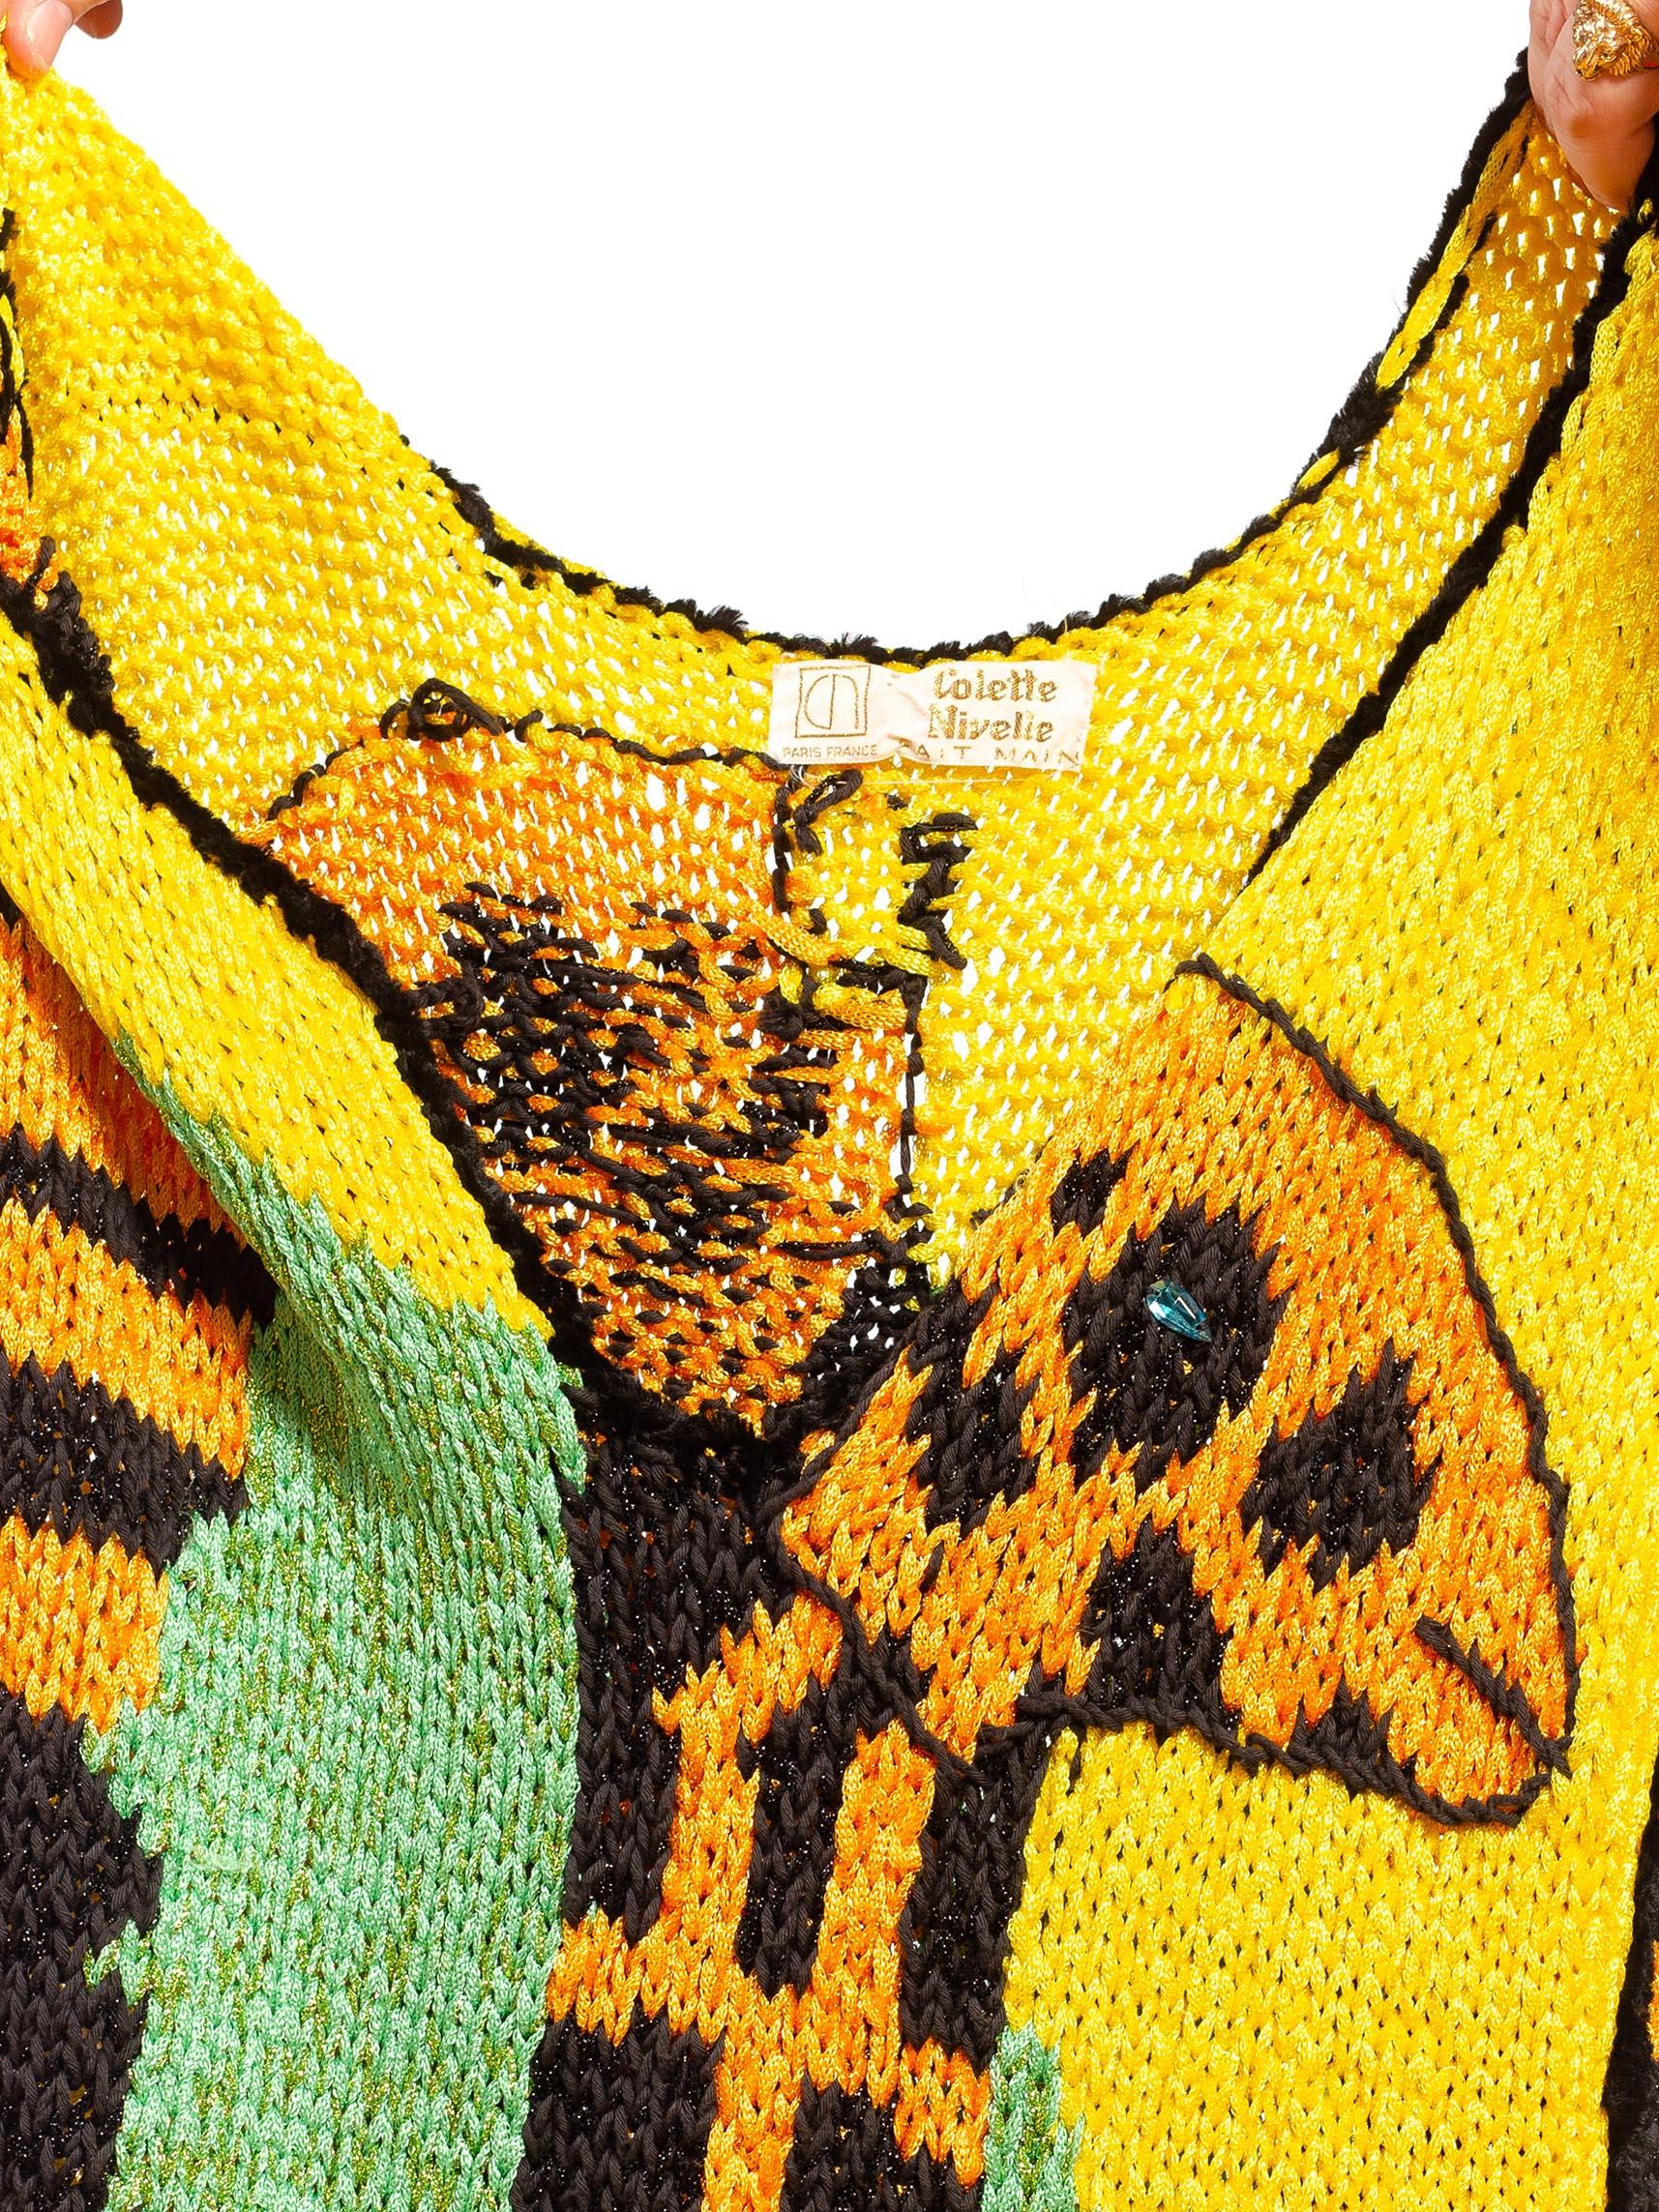 1970S COLETTE NIVELLE Yellow Orange & Blue Nylon Hand Knit Giraffe Dress For Sale 6